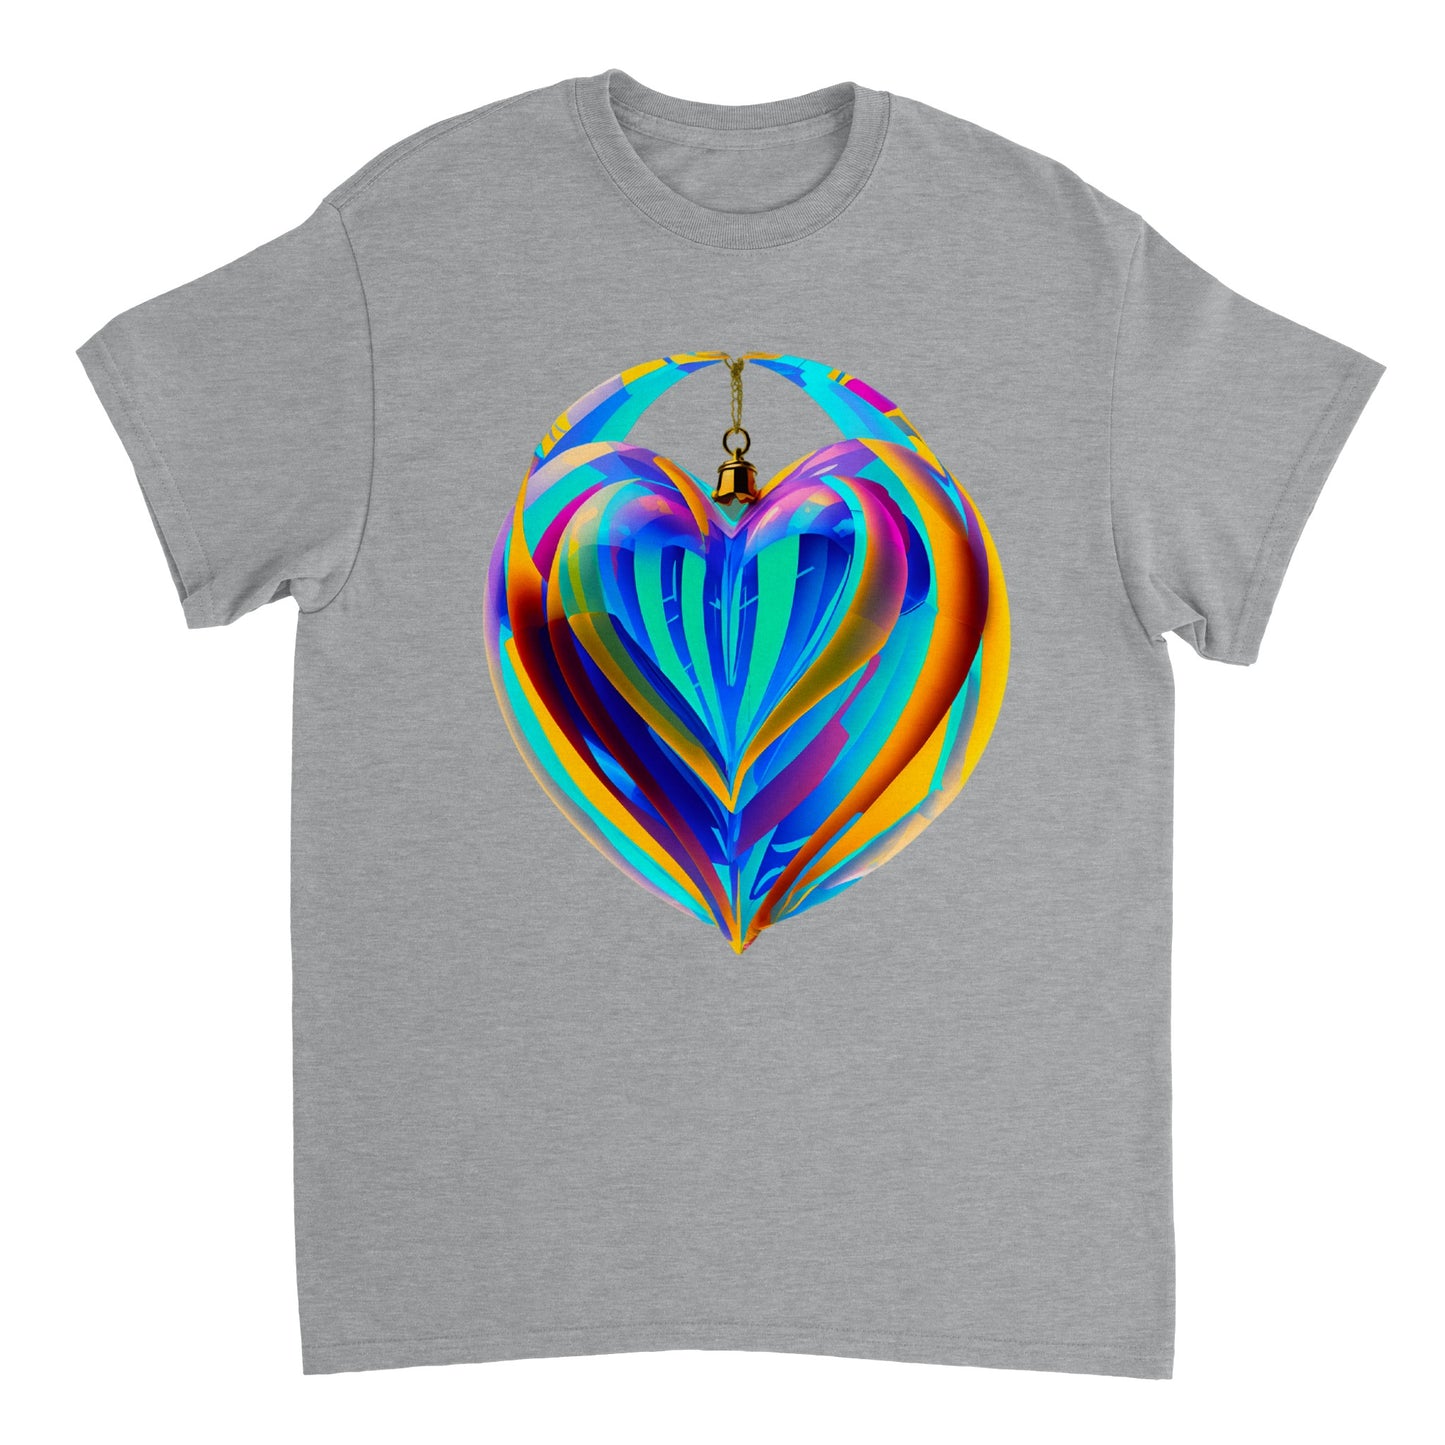 Love Heart - Heavyweight Unisex Crewneck T-shirt 38